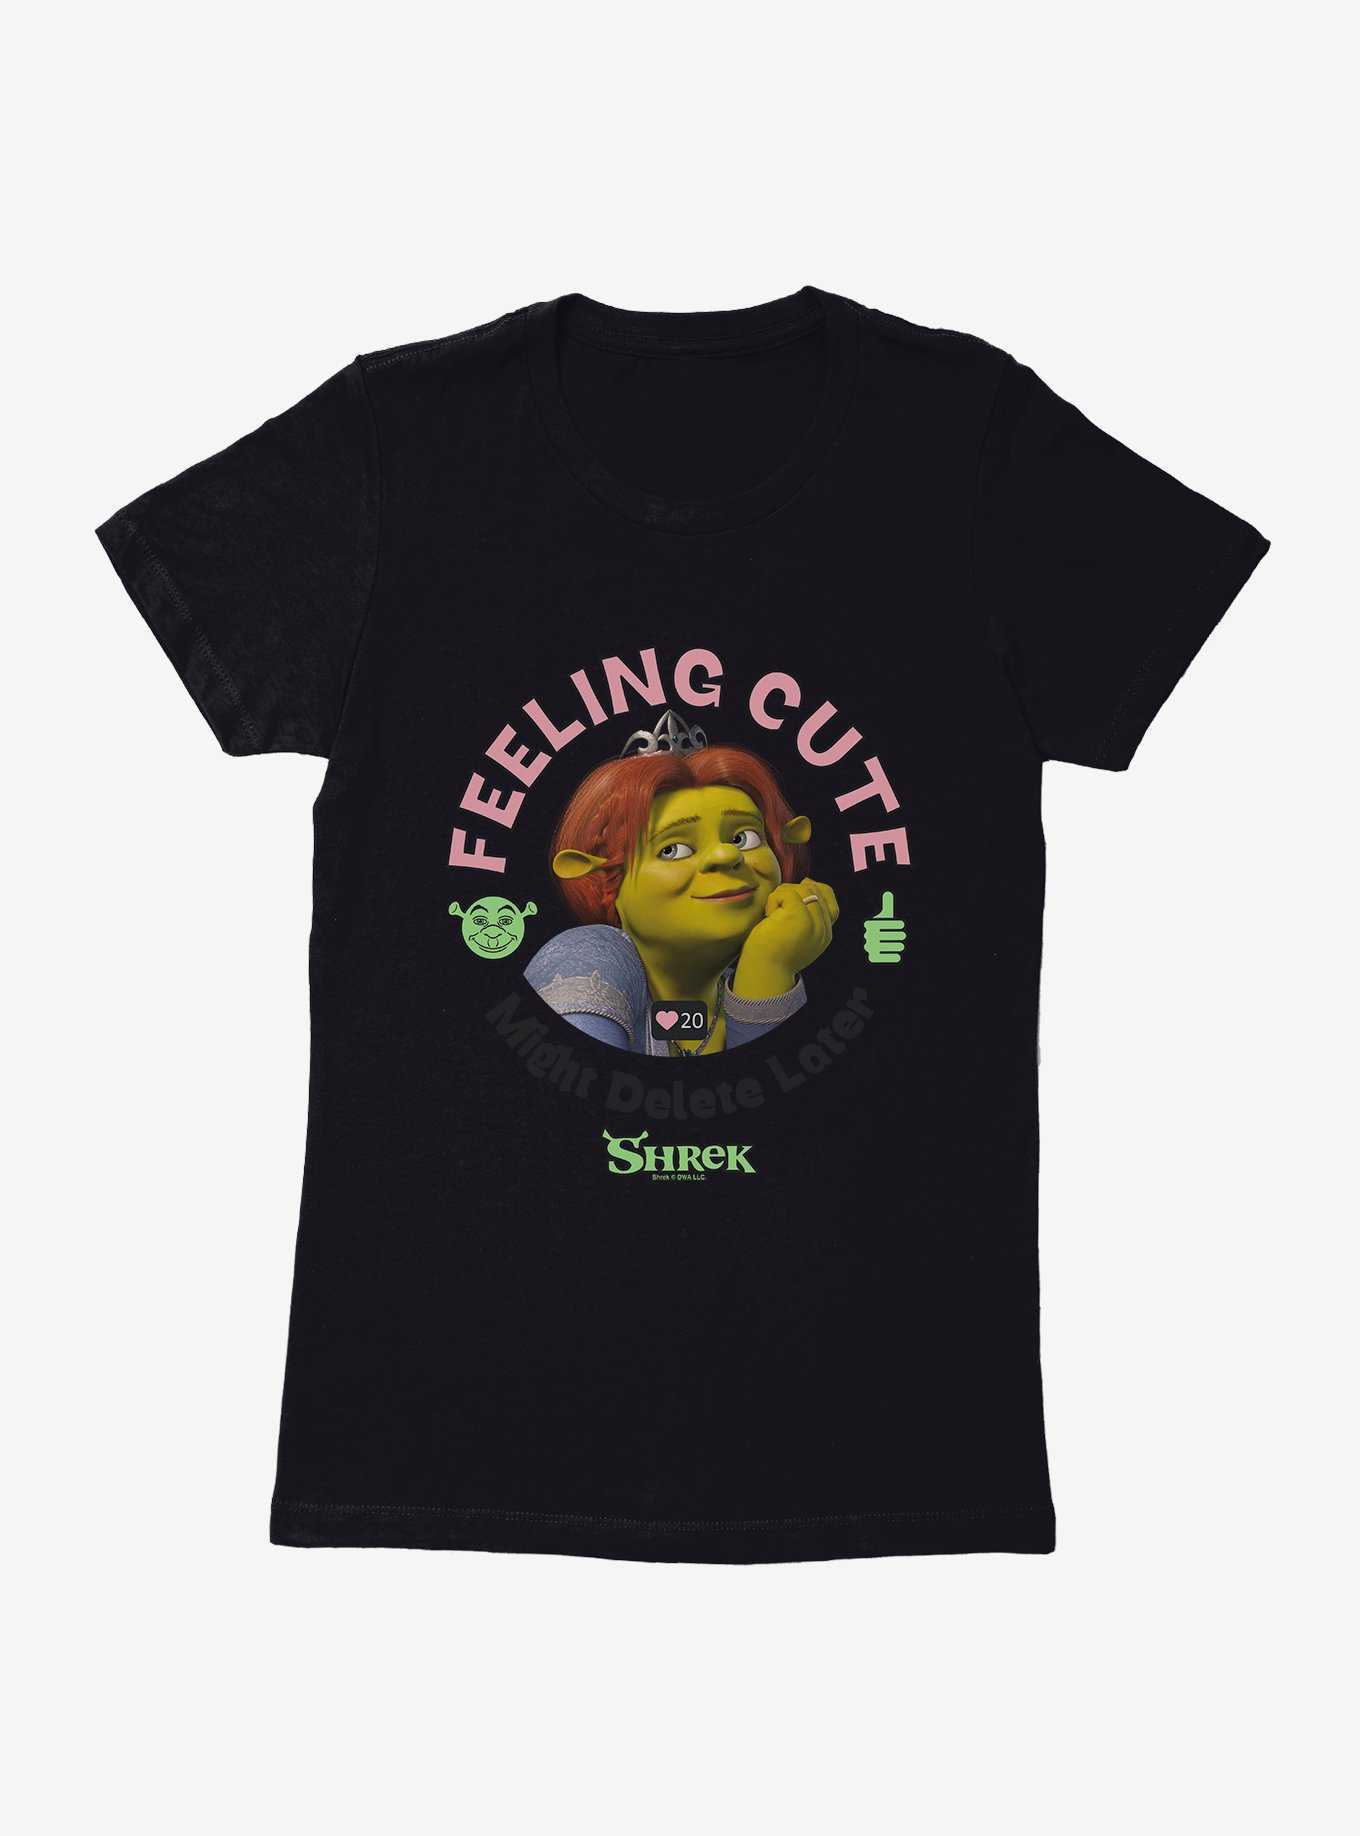 Shrek Fiona Feeling Cute Womens T-Shirt, , hi-res